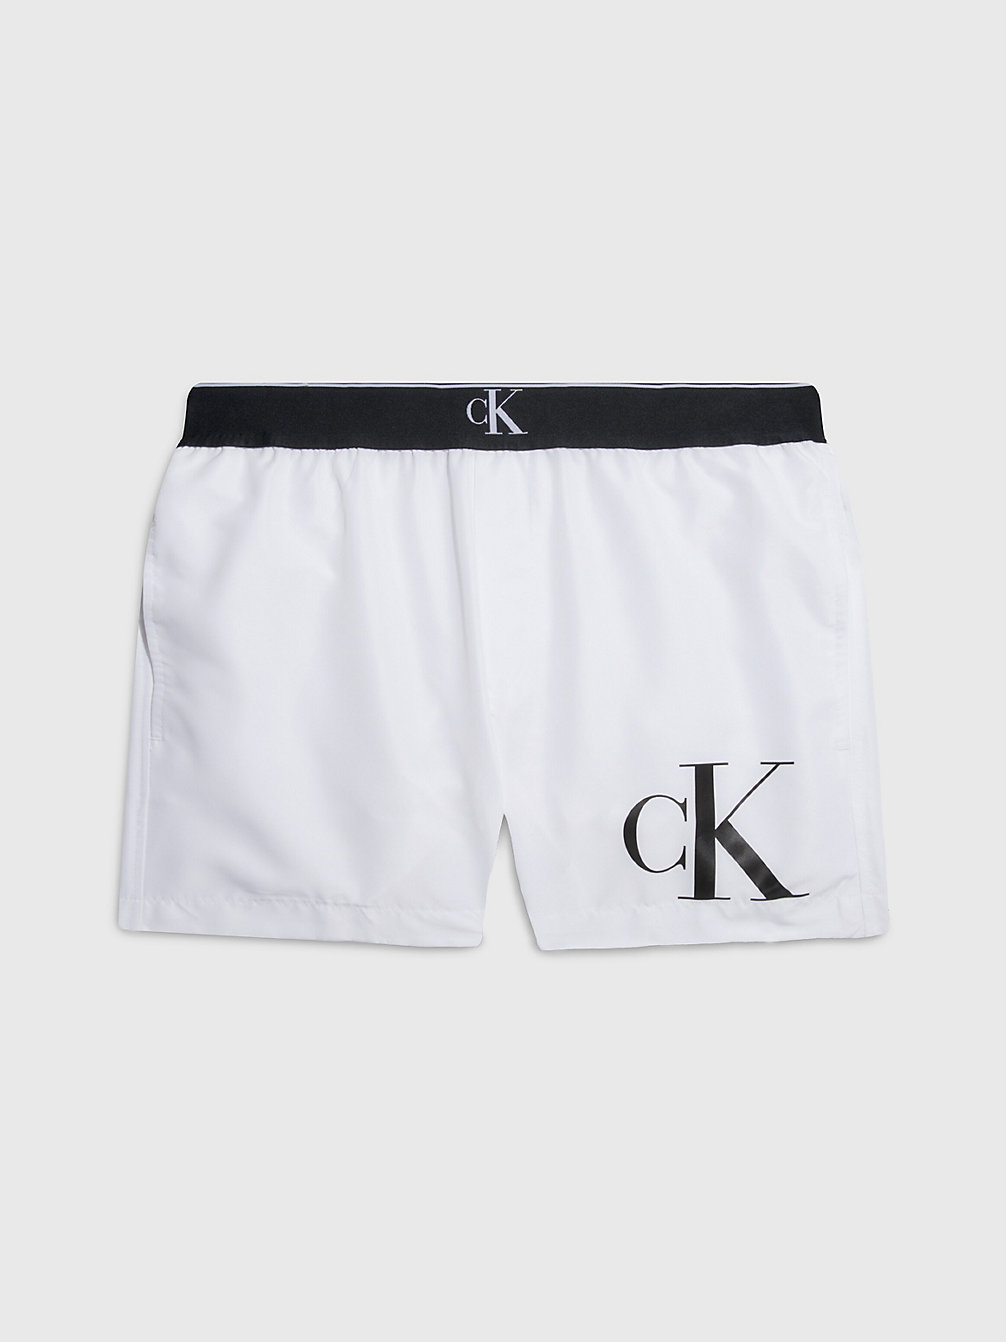 PVH CLASSIC WHITE Badeshorts – CK Monogram undefined Herren Calvin Klein